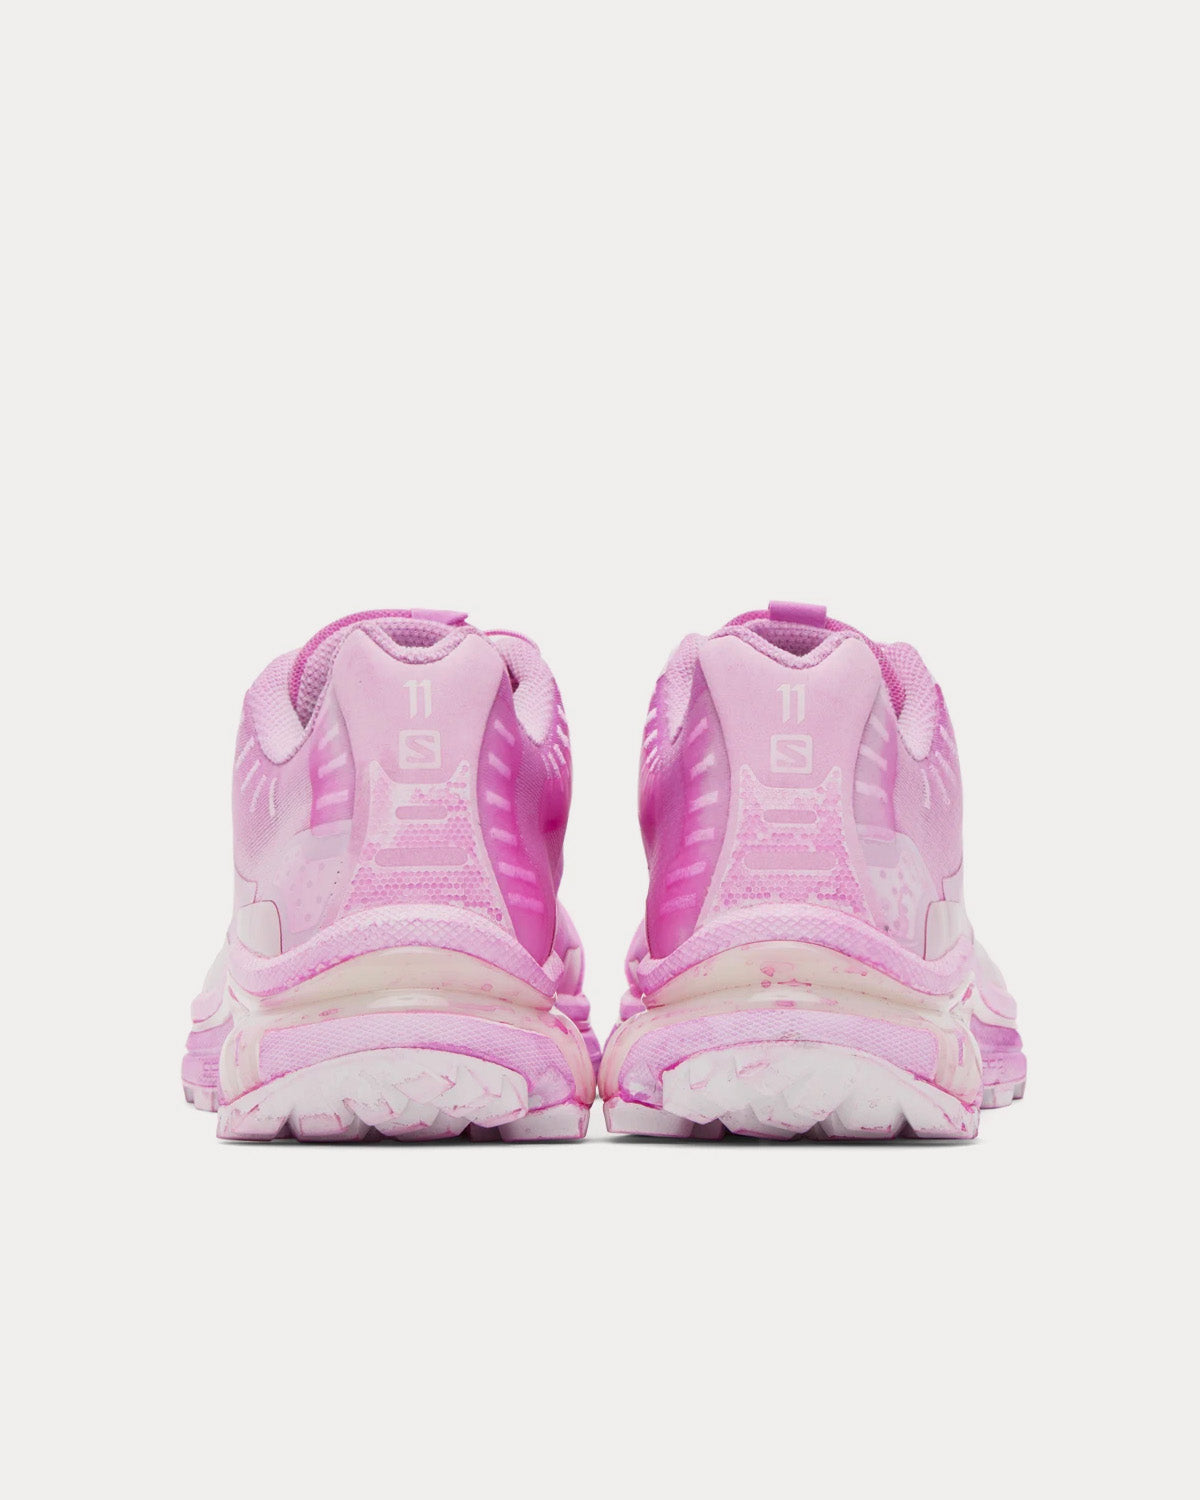 Salomon x 11 By Boris Bidjan Saberi - Bamba 5 Pink Panther Low Top Sneakers